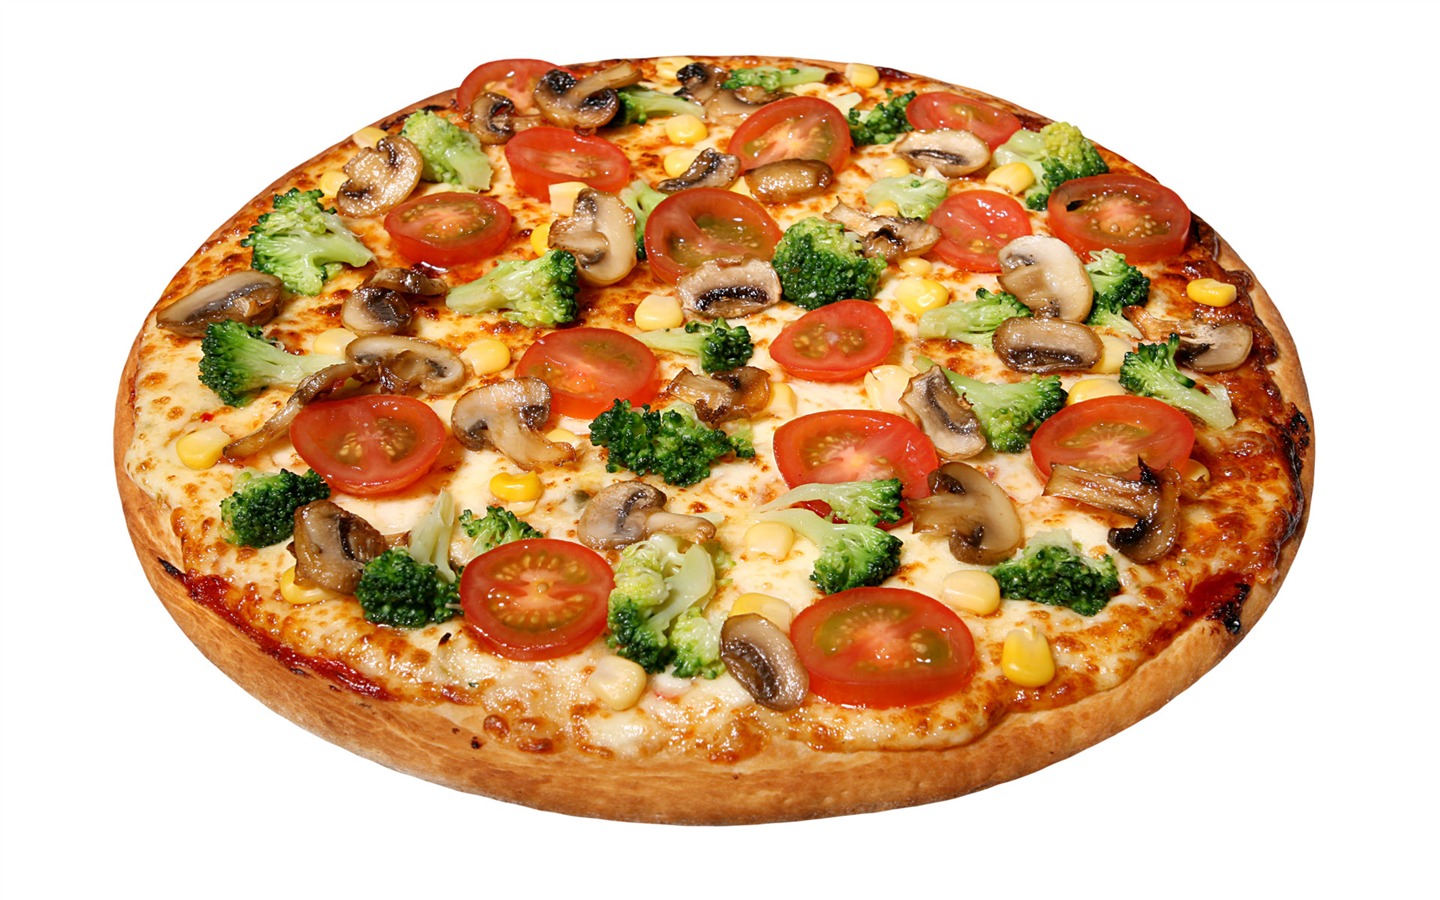 Fondos de pizzerías de Alimentos (4) #18 - 1440x900